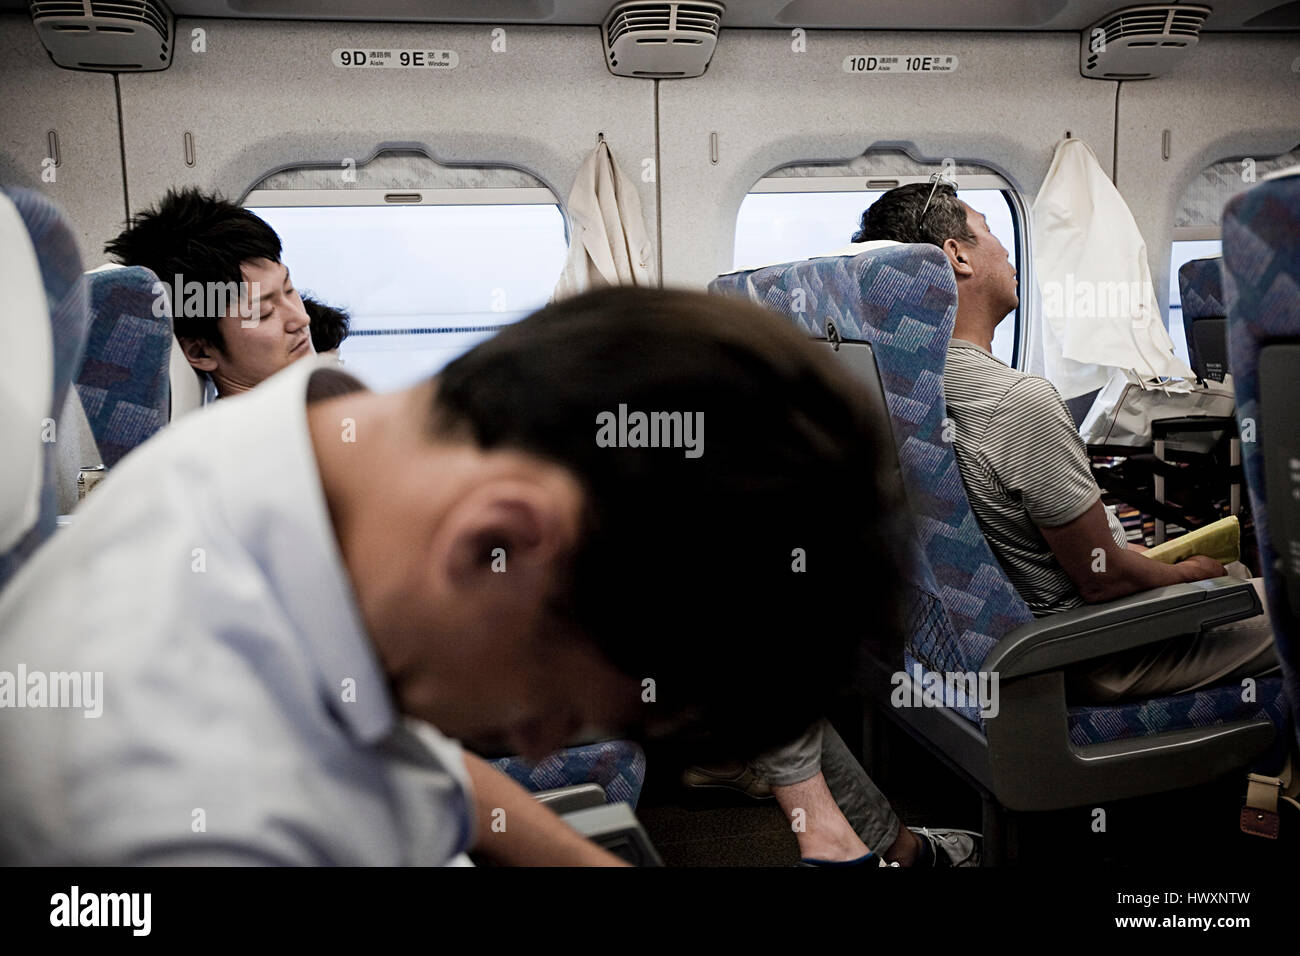 Les hommes japonais à dormir dans un panier-train, au Japon. Voyage en train au Japon est une expérience à grande vitesse pour de nombreuses personnes étrangères et très confortable pour t Banque D'Images